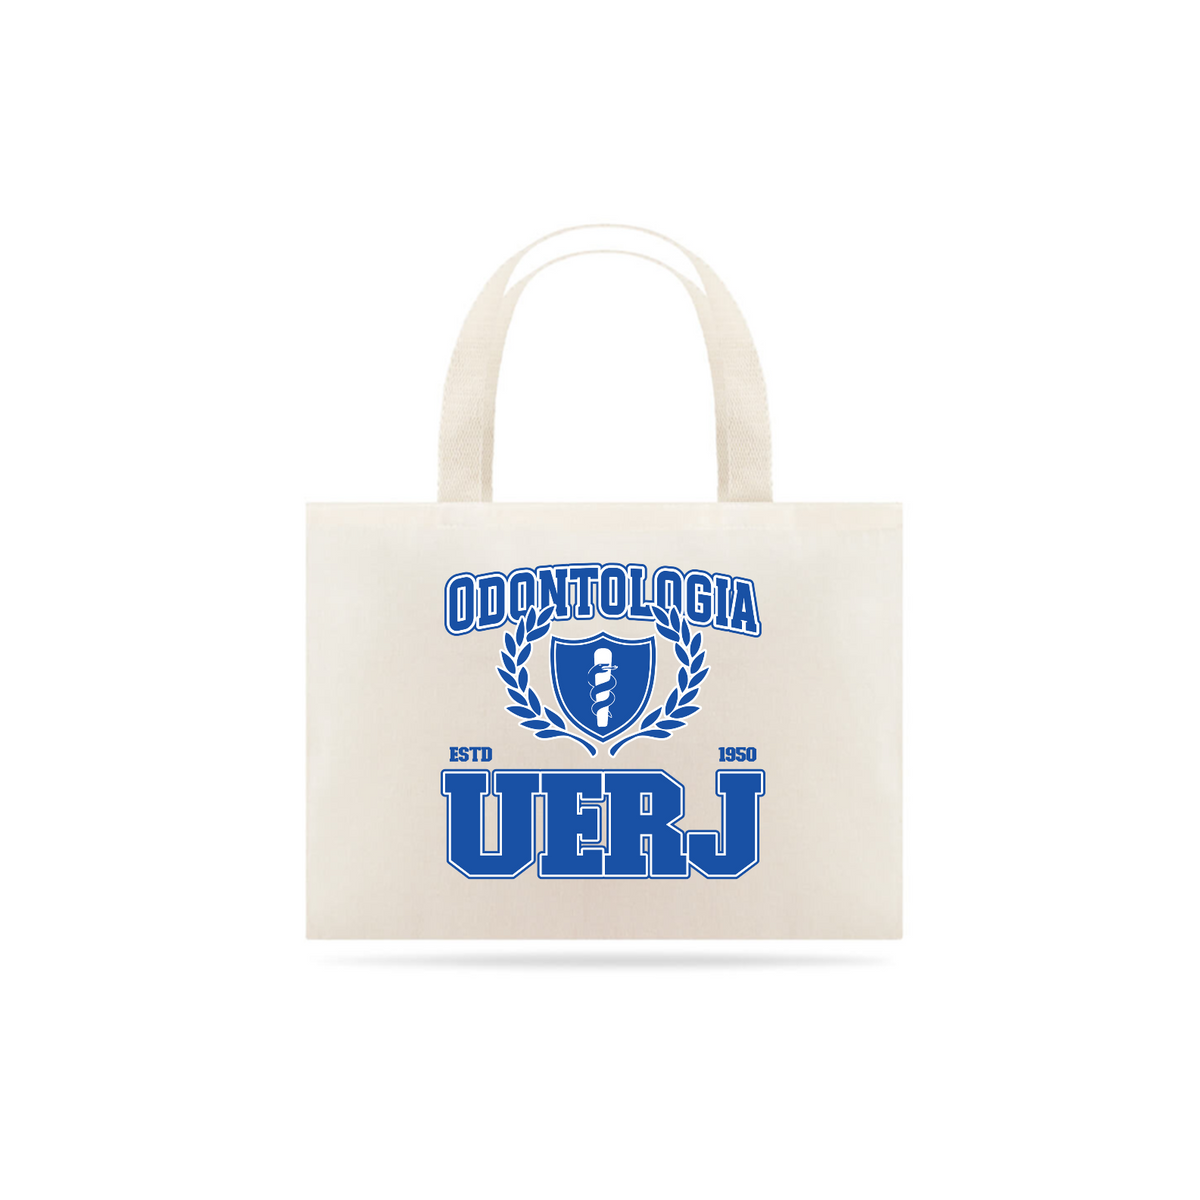 Nome do produto: UniVerso - Ecobag Odontologia UERJ 